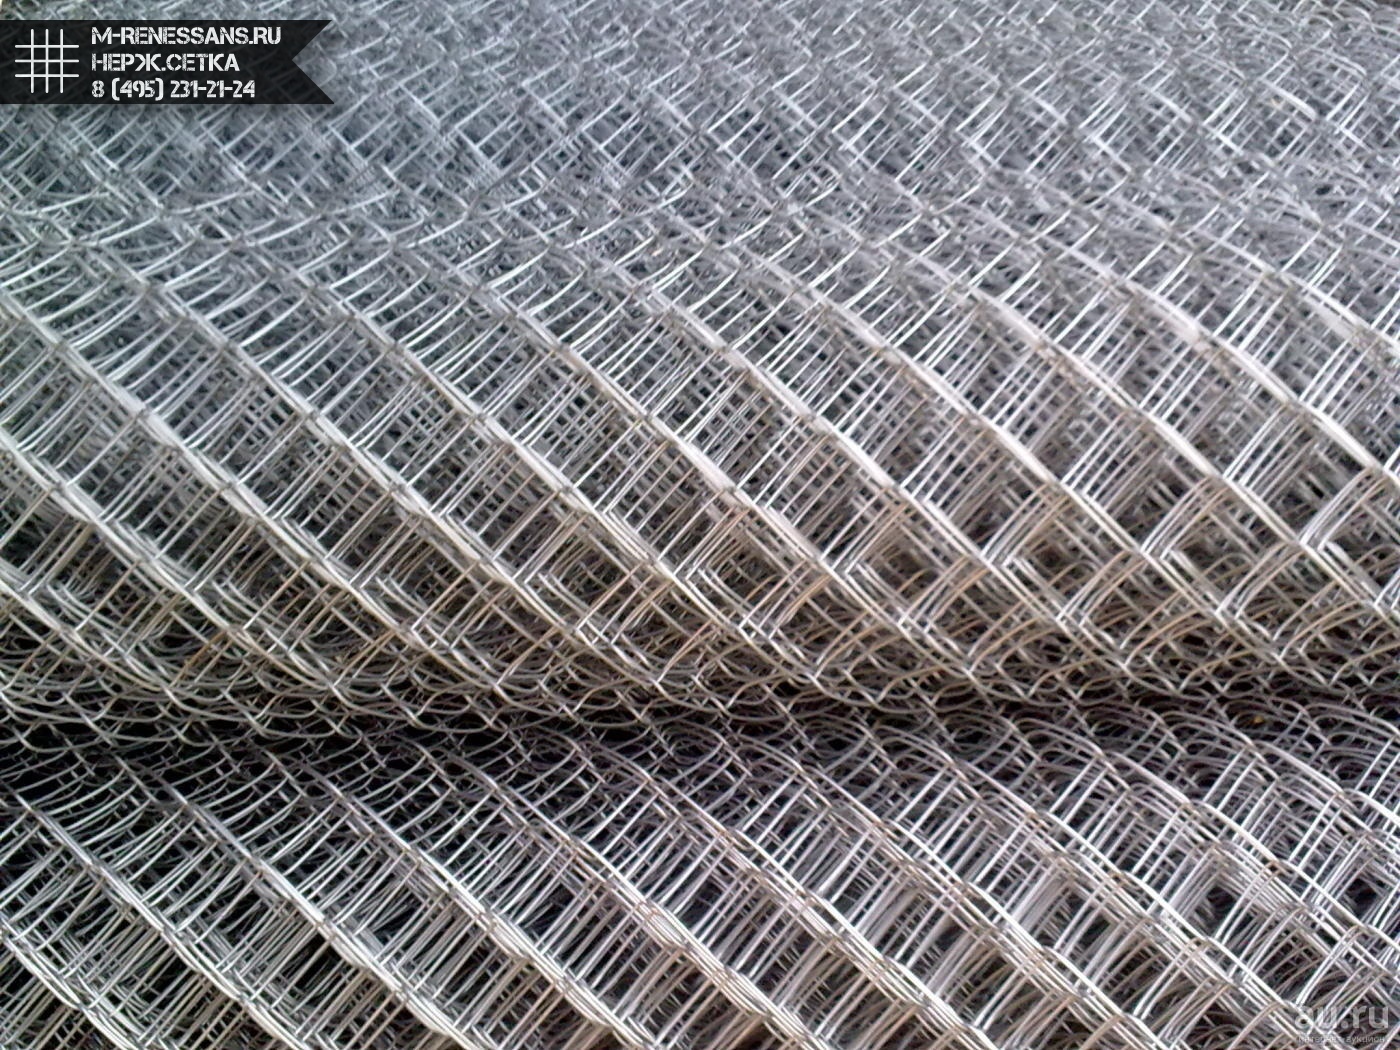 Виды и применение сетки из нержавеющей стали